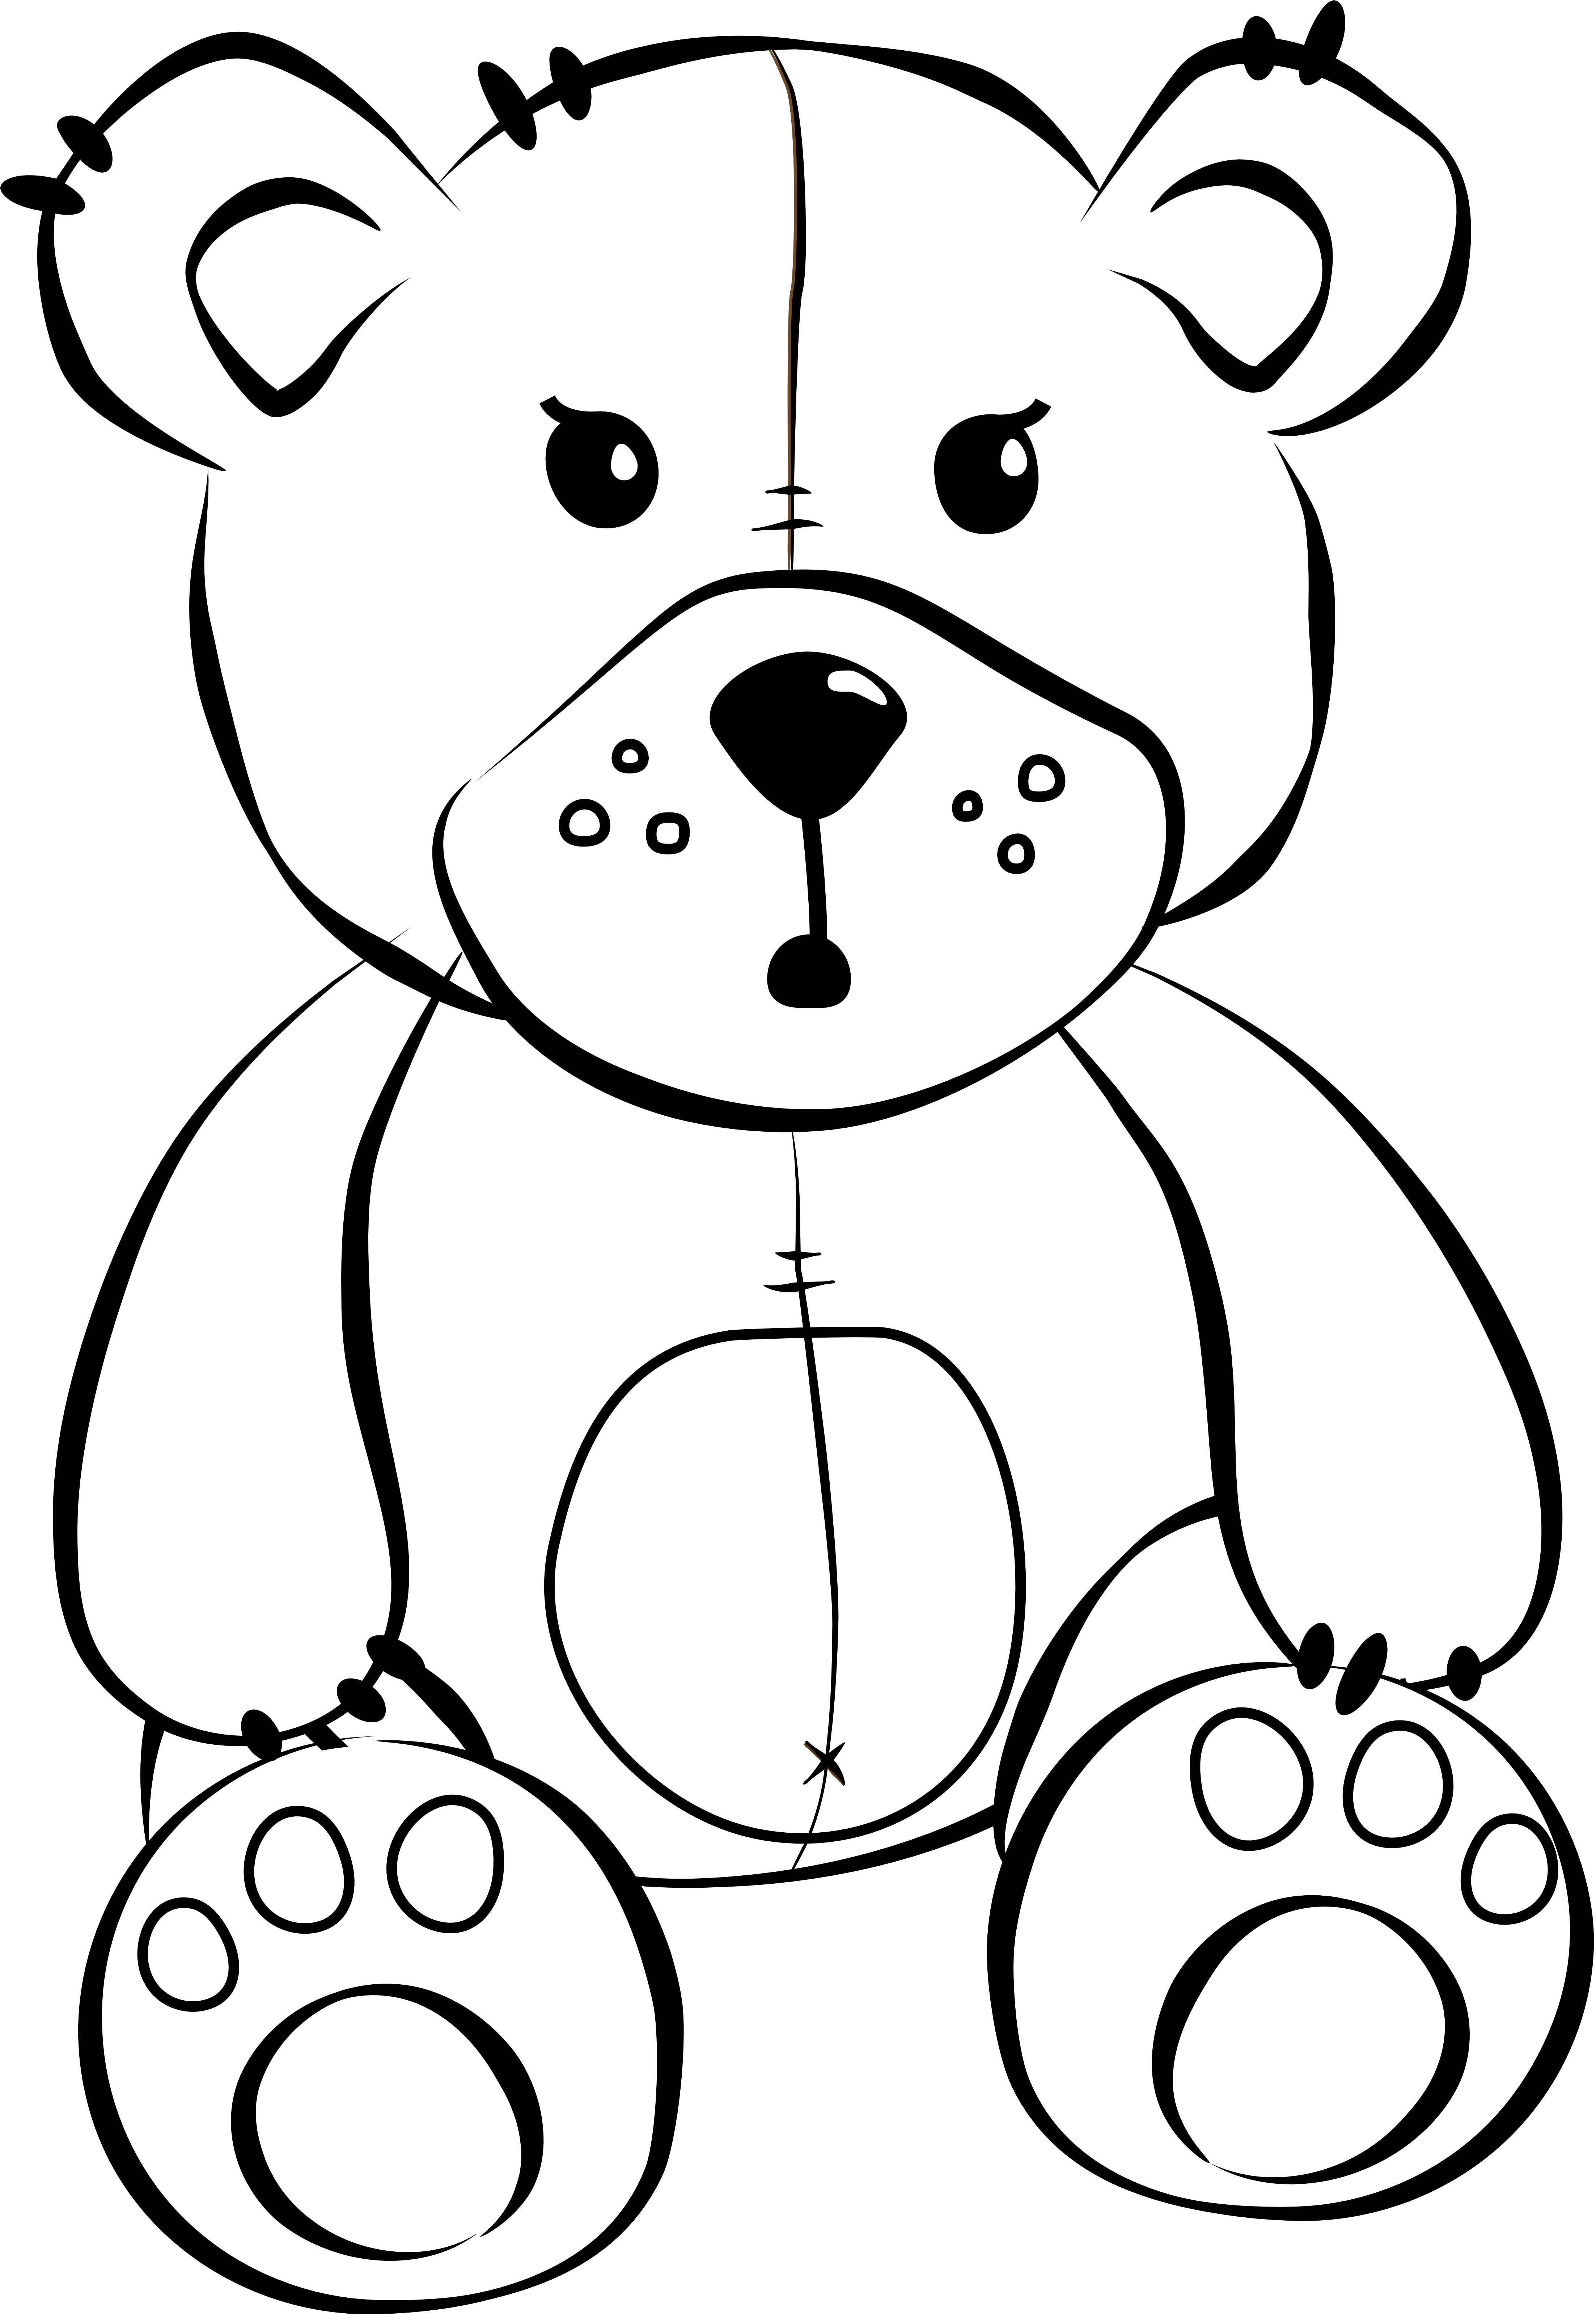 Игрушка рисунок карандашом. Раскраска. Медвежонок. Раскраска "мишки". Медвежонок раскраска для детей. Мишка рисунок карандашом.